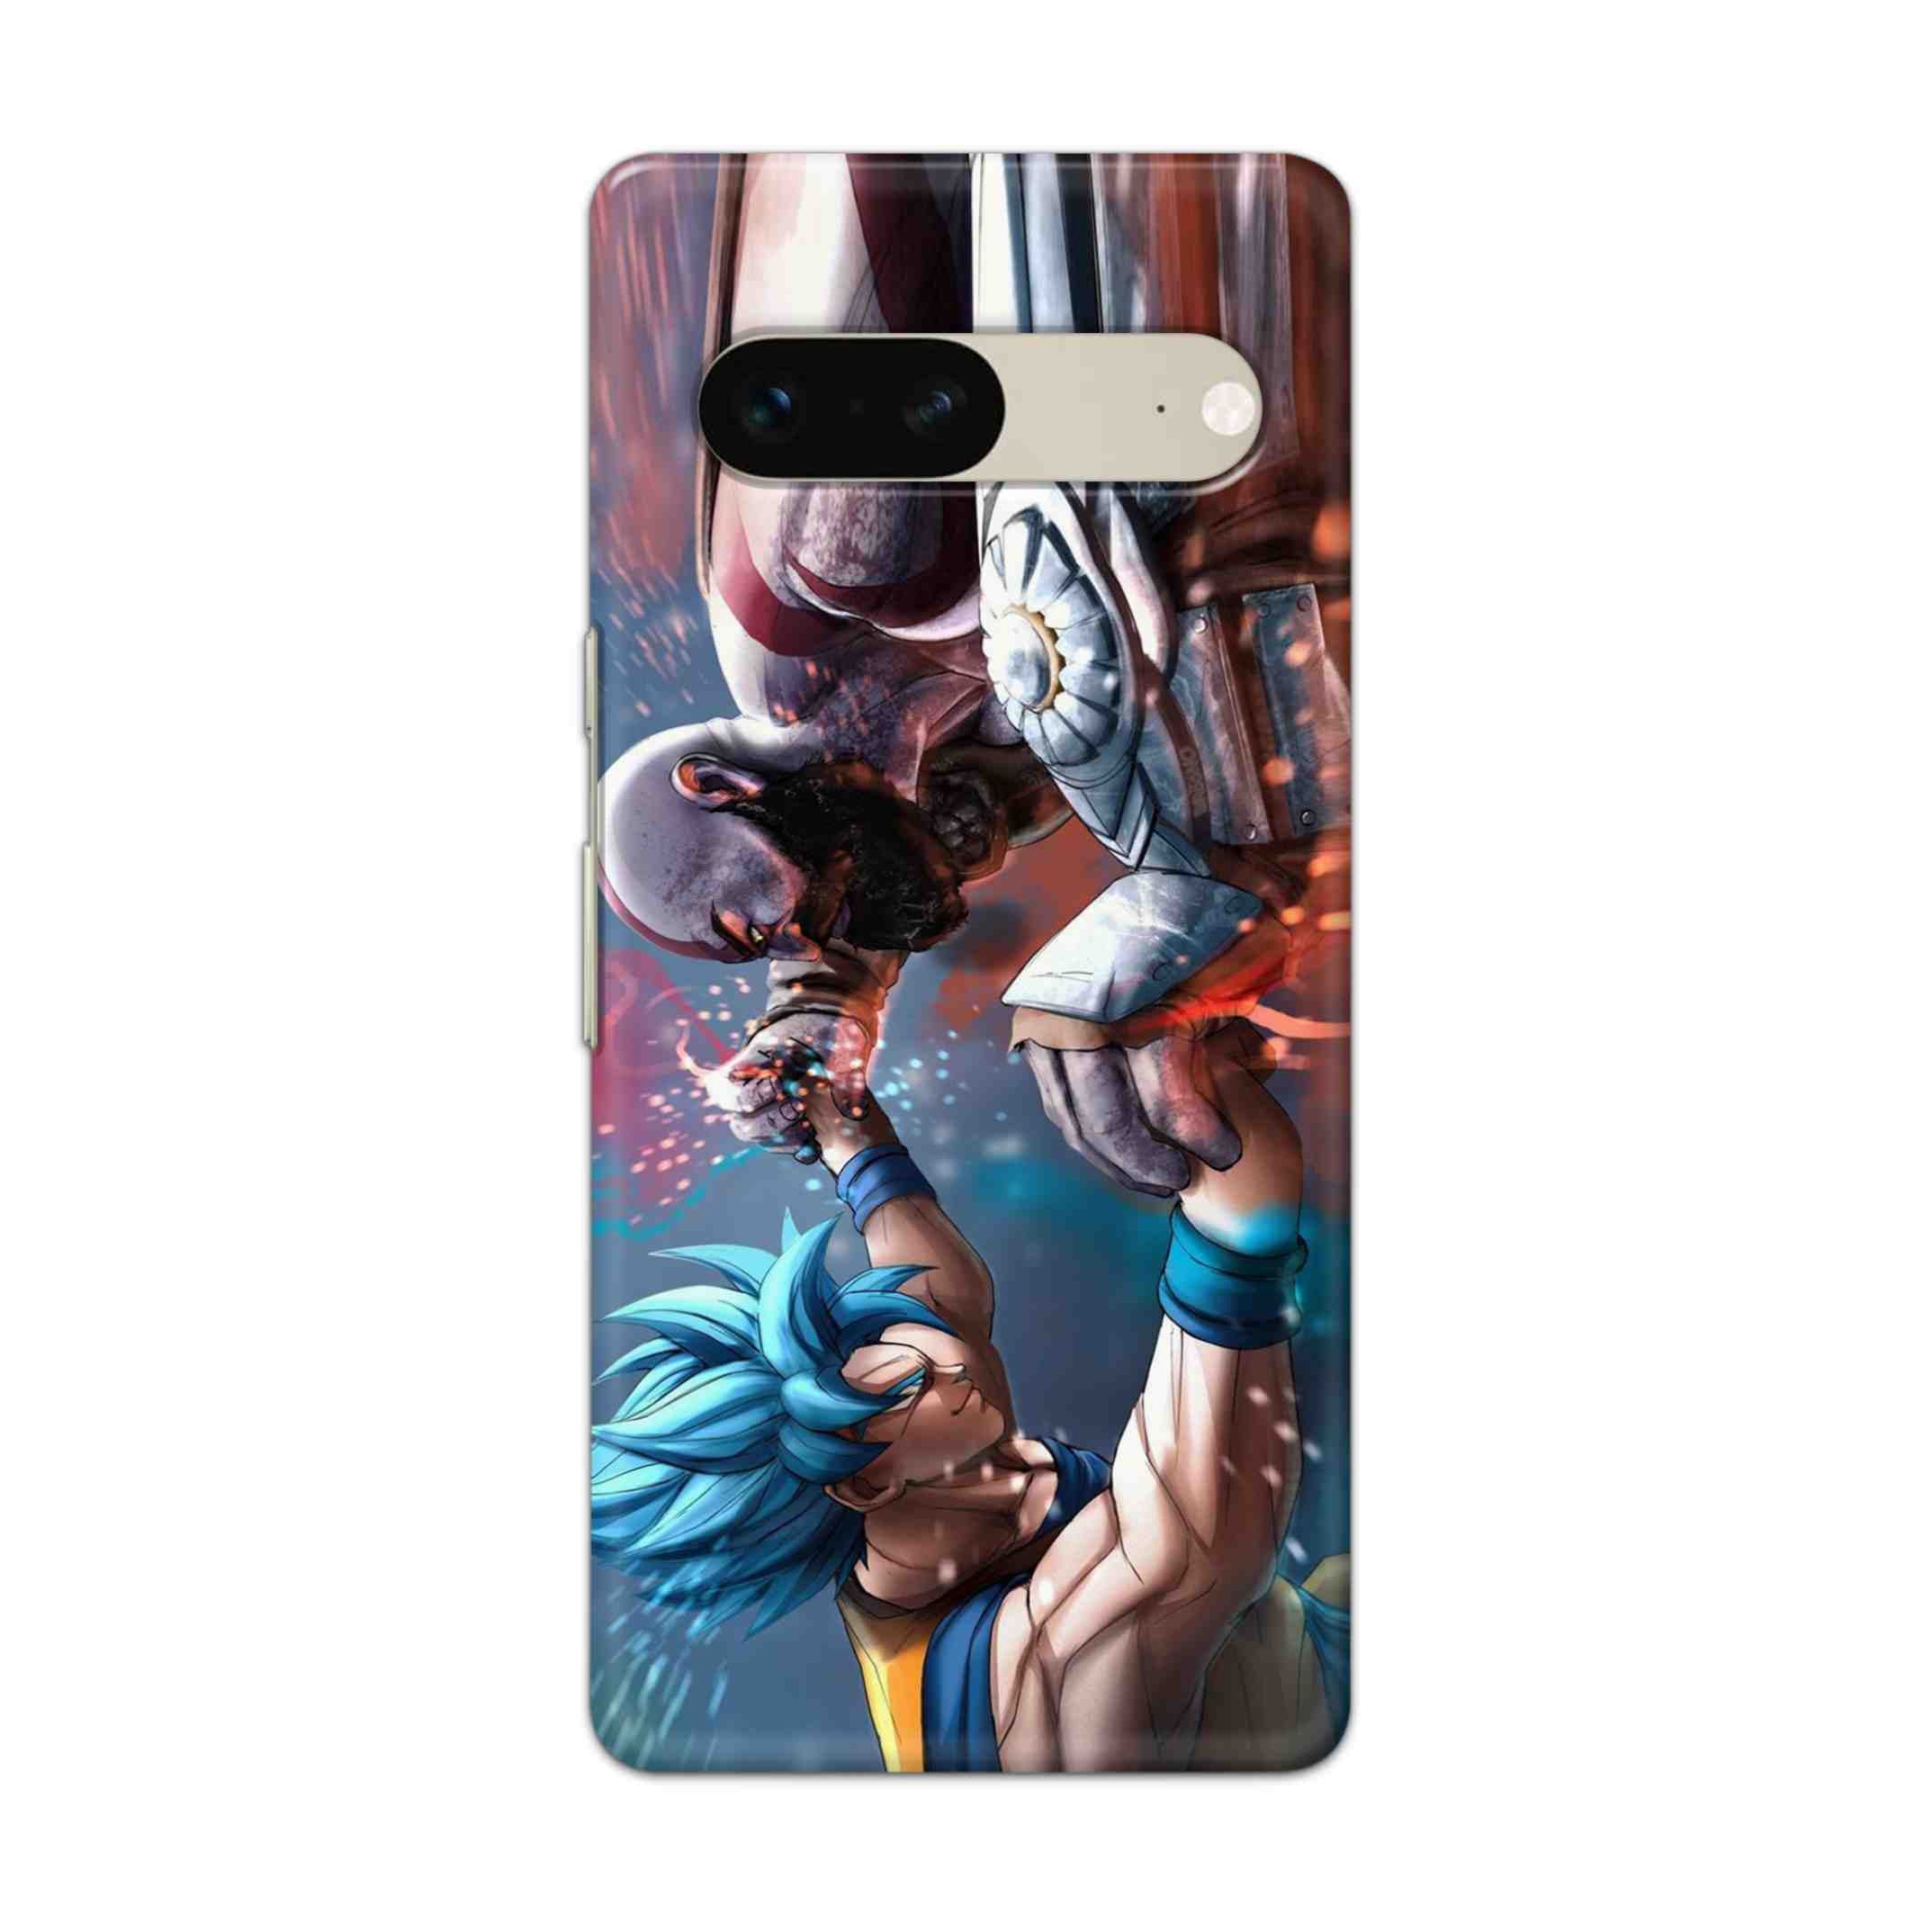 Buy Goku Vs Kratos Hard Back Mobile Phone Case Cover For Google Pixel 7 Online